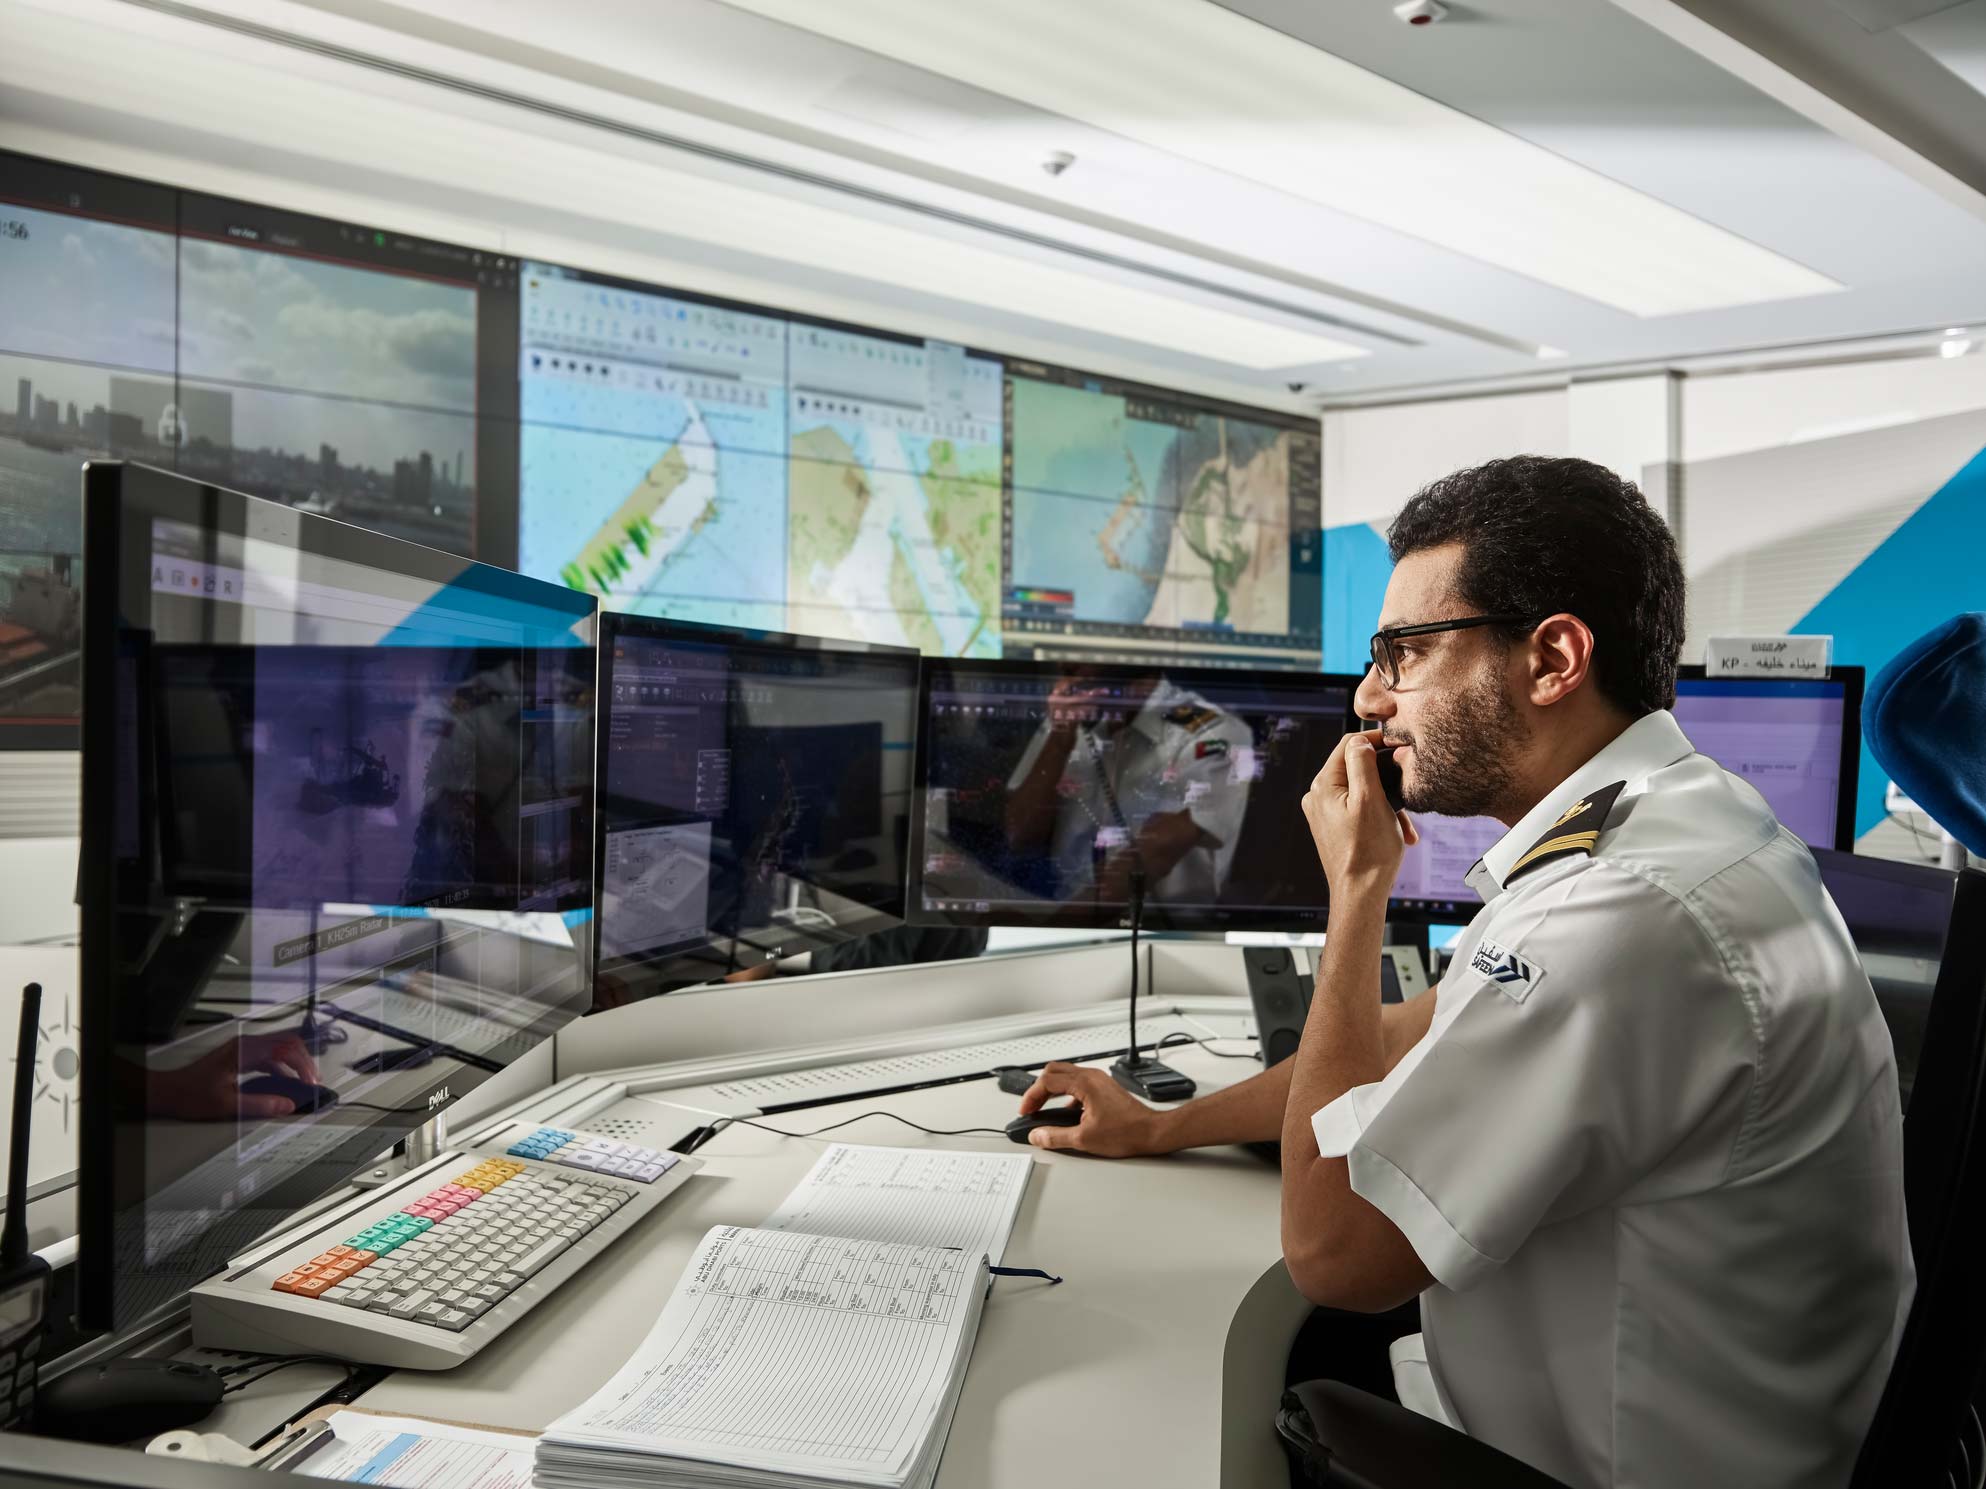 مجموعة موانئ أبوظبي تستثمر في أحدث نظم إدارة حركة السفن لتعزيز السلامة ورفع كفاءة العمليات البحرية